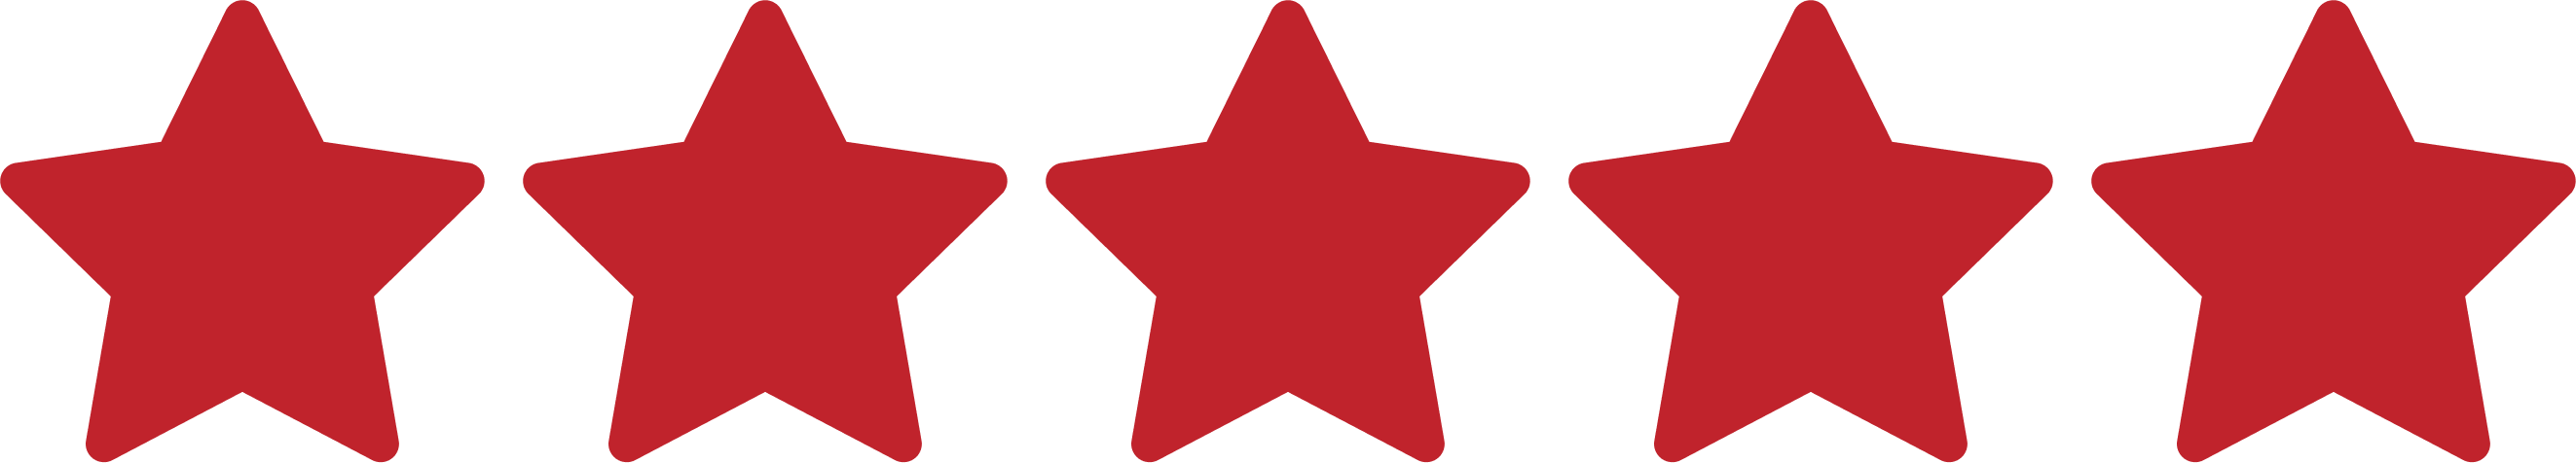 testimonial-star-rating